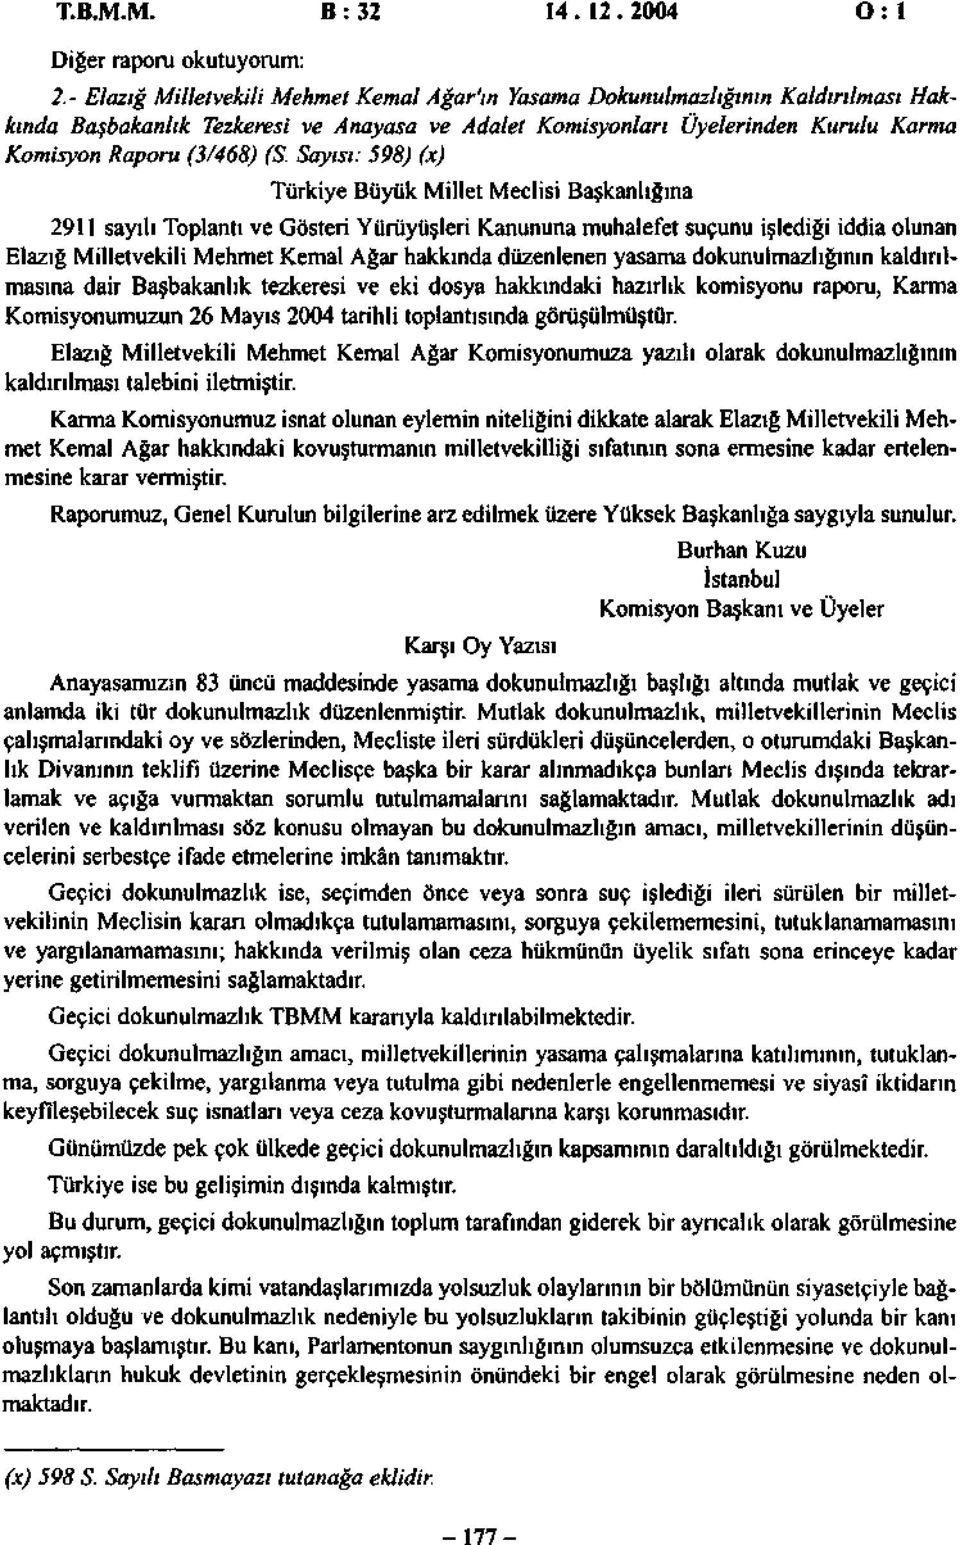 Sayısı: 598) (x) Türkiye Büyük Millet Meclisi Başkanlığına 2911 sayılı Toplantı ve Gösteri Yürüyüşleri Kanununa muhalefet suçunu işlediği iddia olunan Elazığ Milletvekili Mehmet Kemal Ağar hakkında